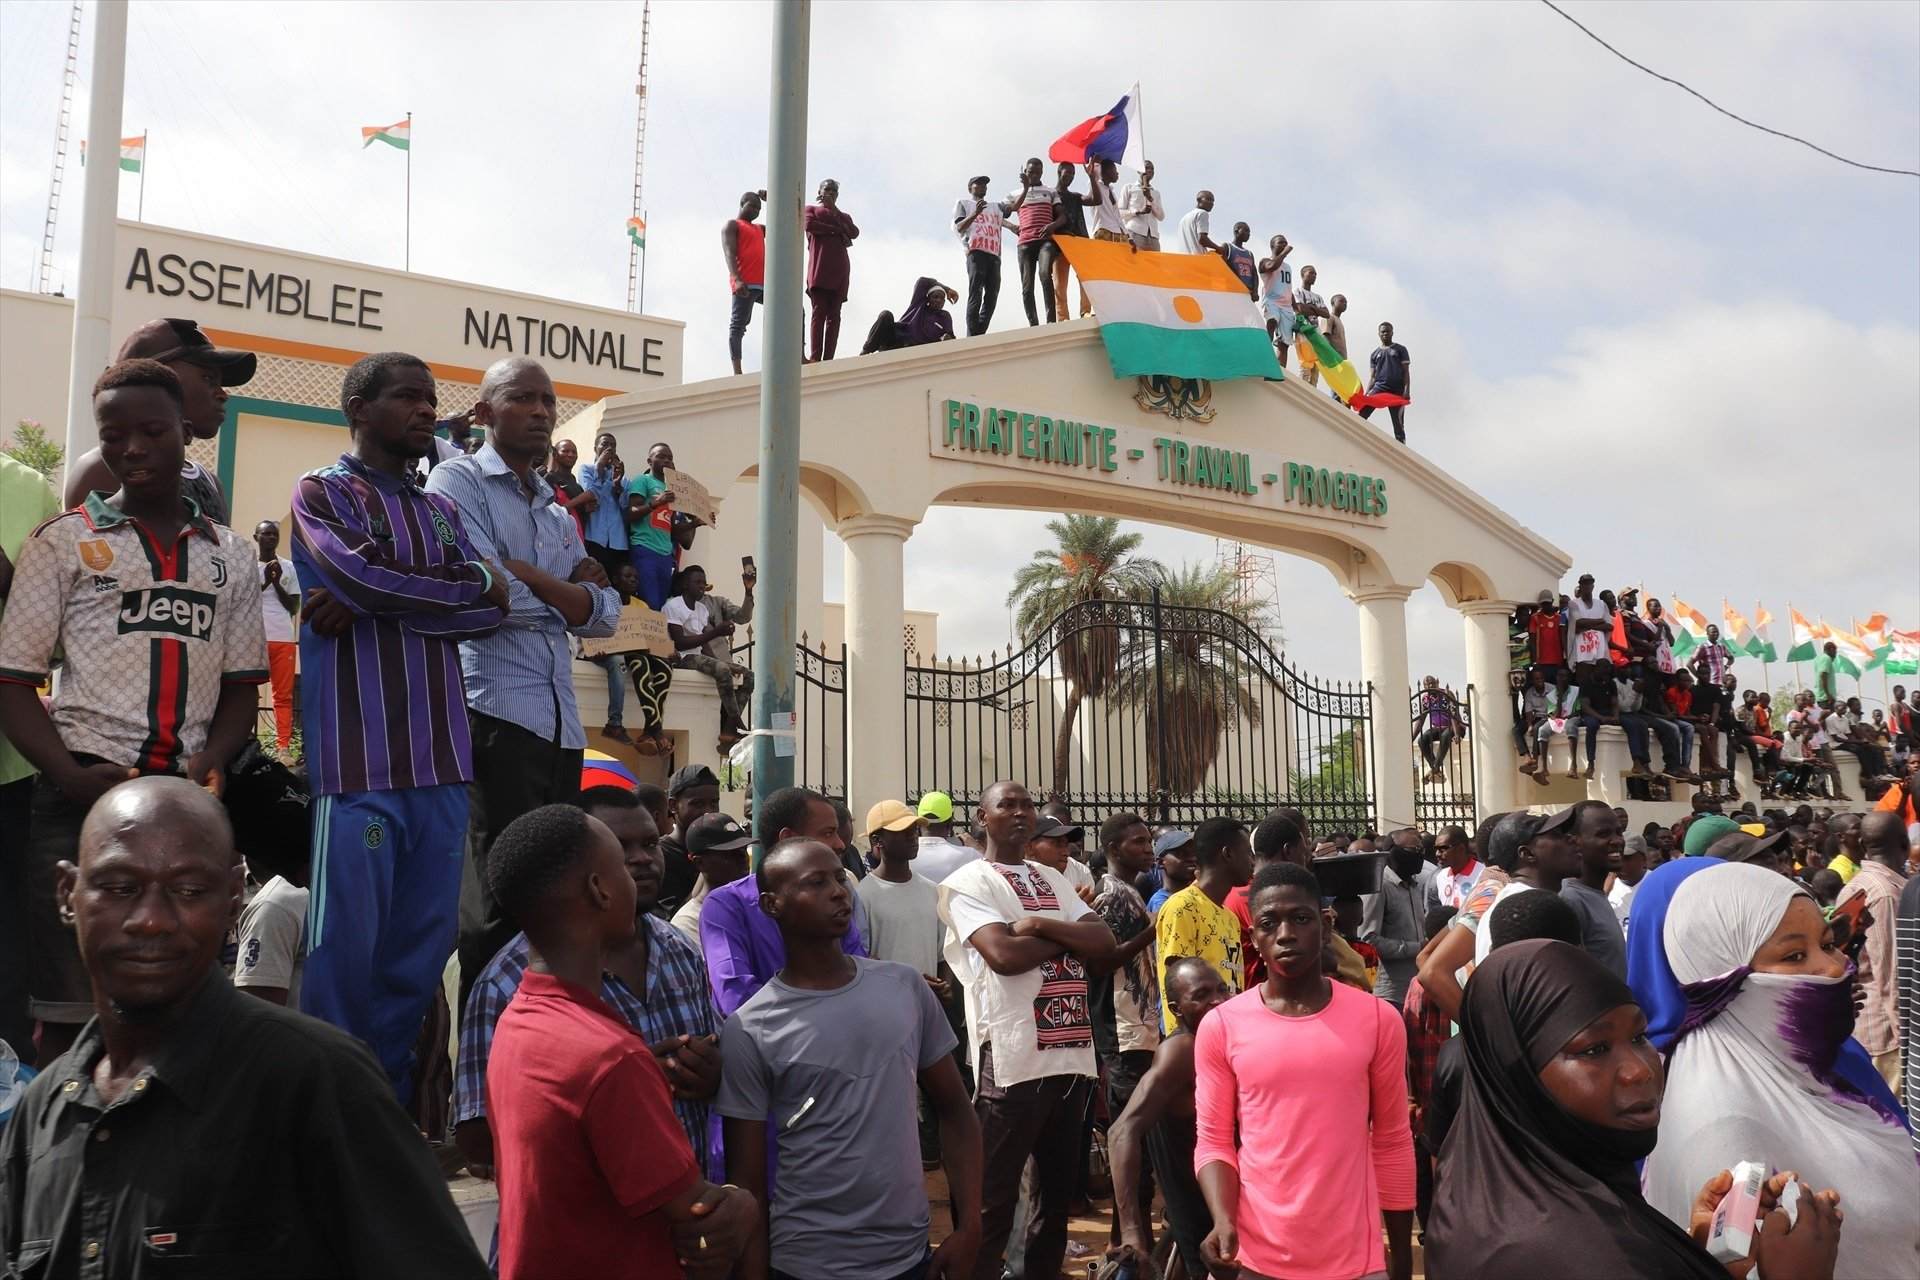 Las protestas en Níger, la vendimia en Francia y más: la vuelta al mundo en 15 fotos